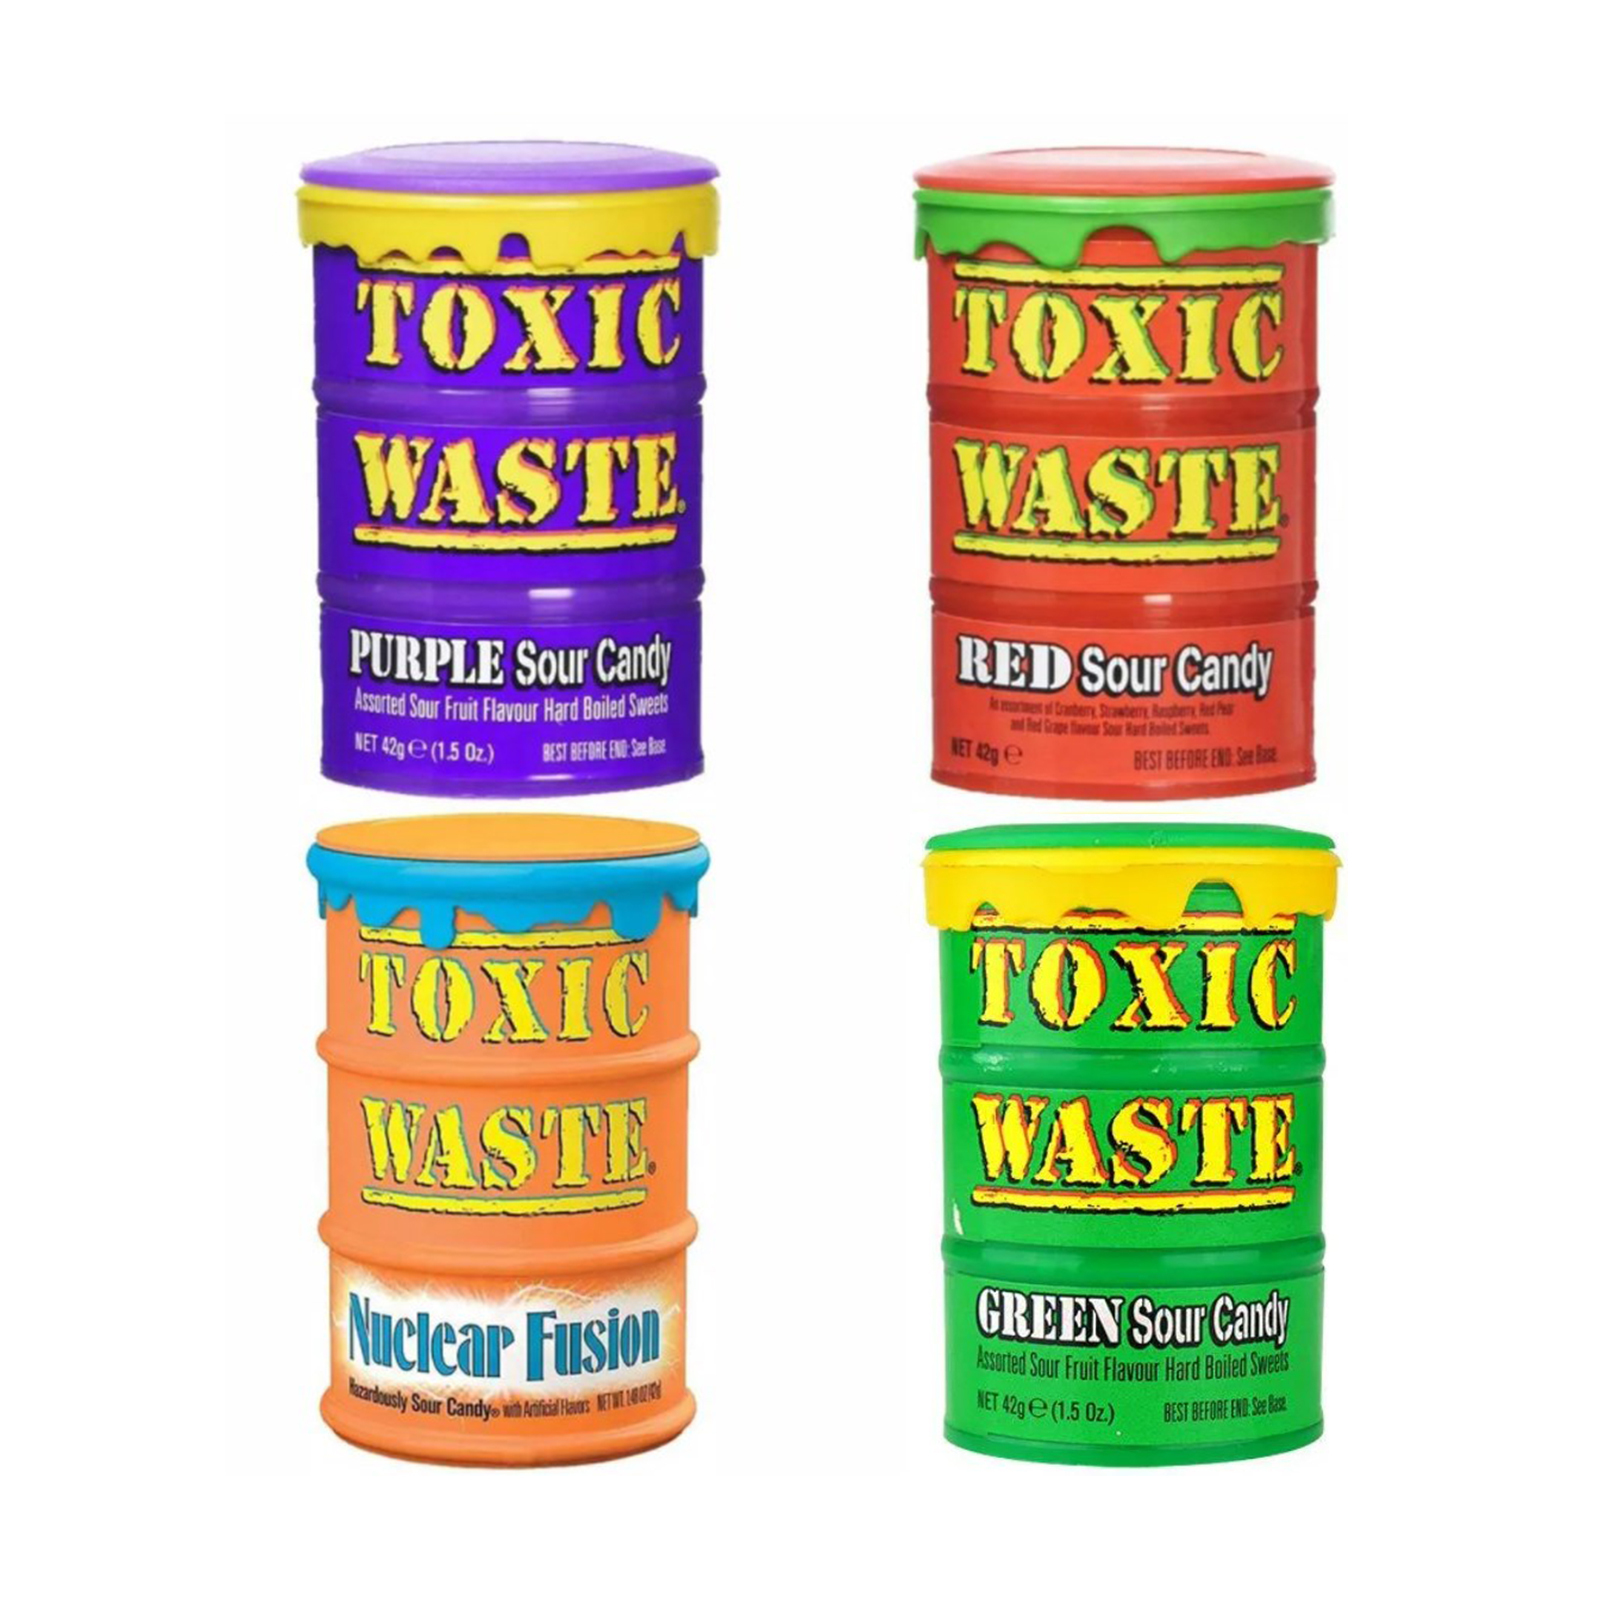 Сколько стоит токсик. Леденцы Toxic waste. Конфеты Токсик Вейст. Токсик Вейст вкусы. Кислые конфеты Toxic waste.